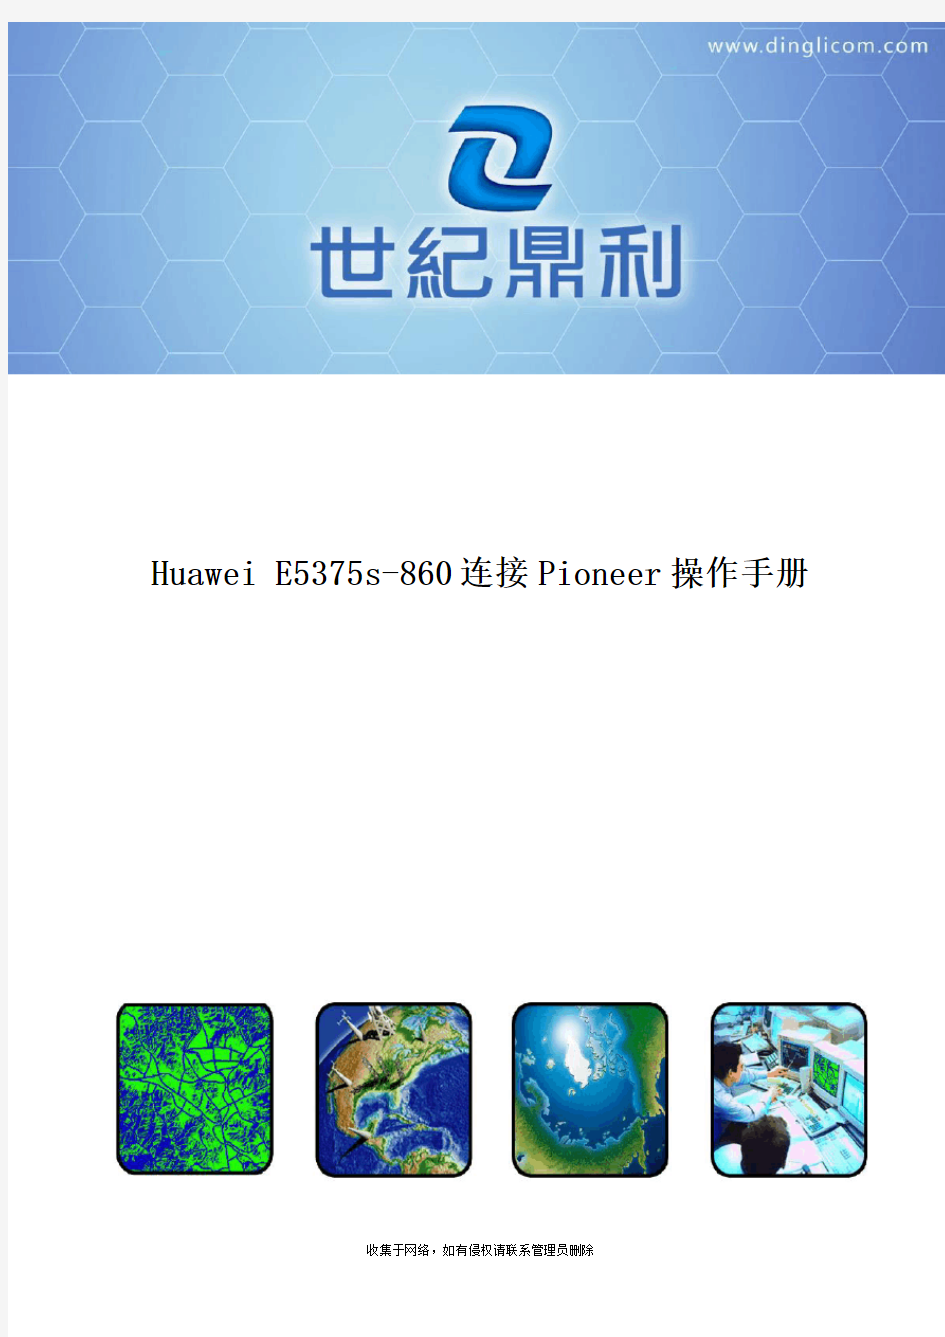 Huawei E5375s-860连接pioneer操作手册资料讲解